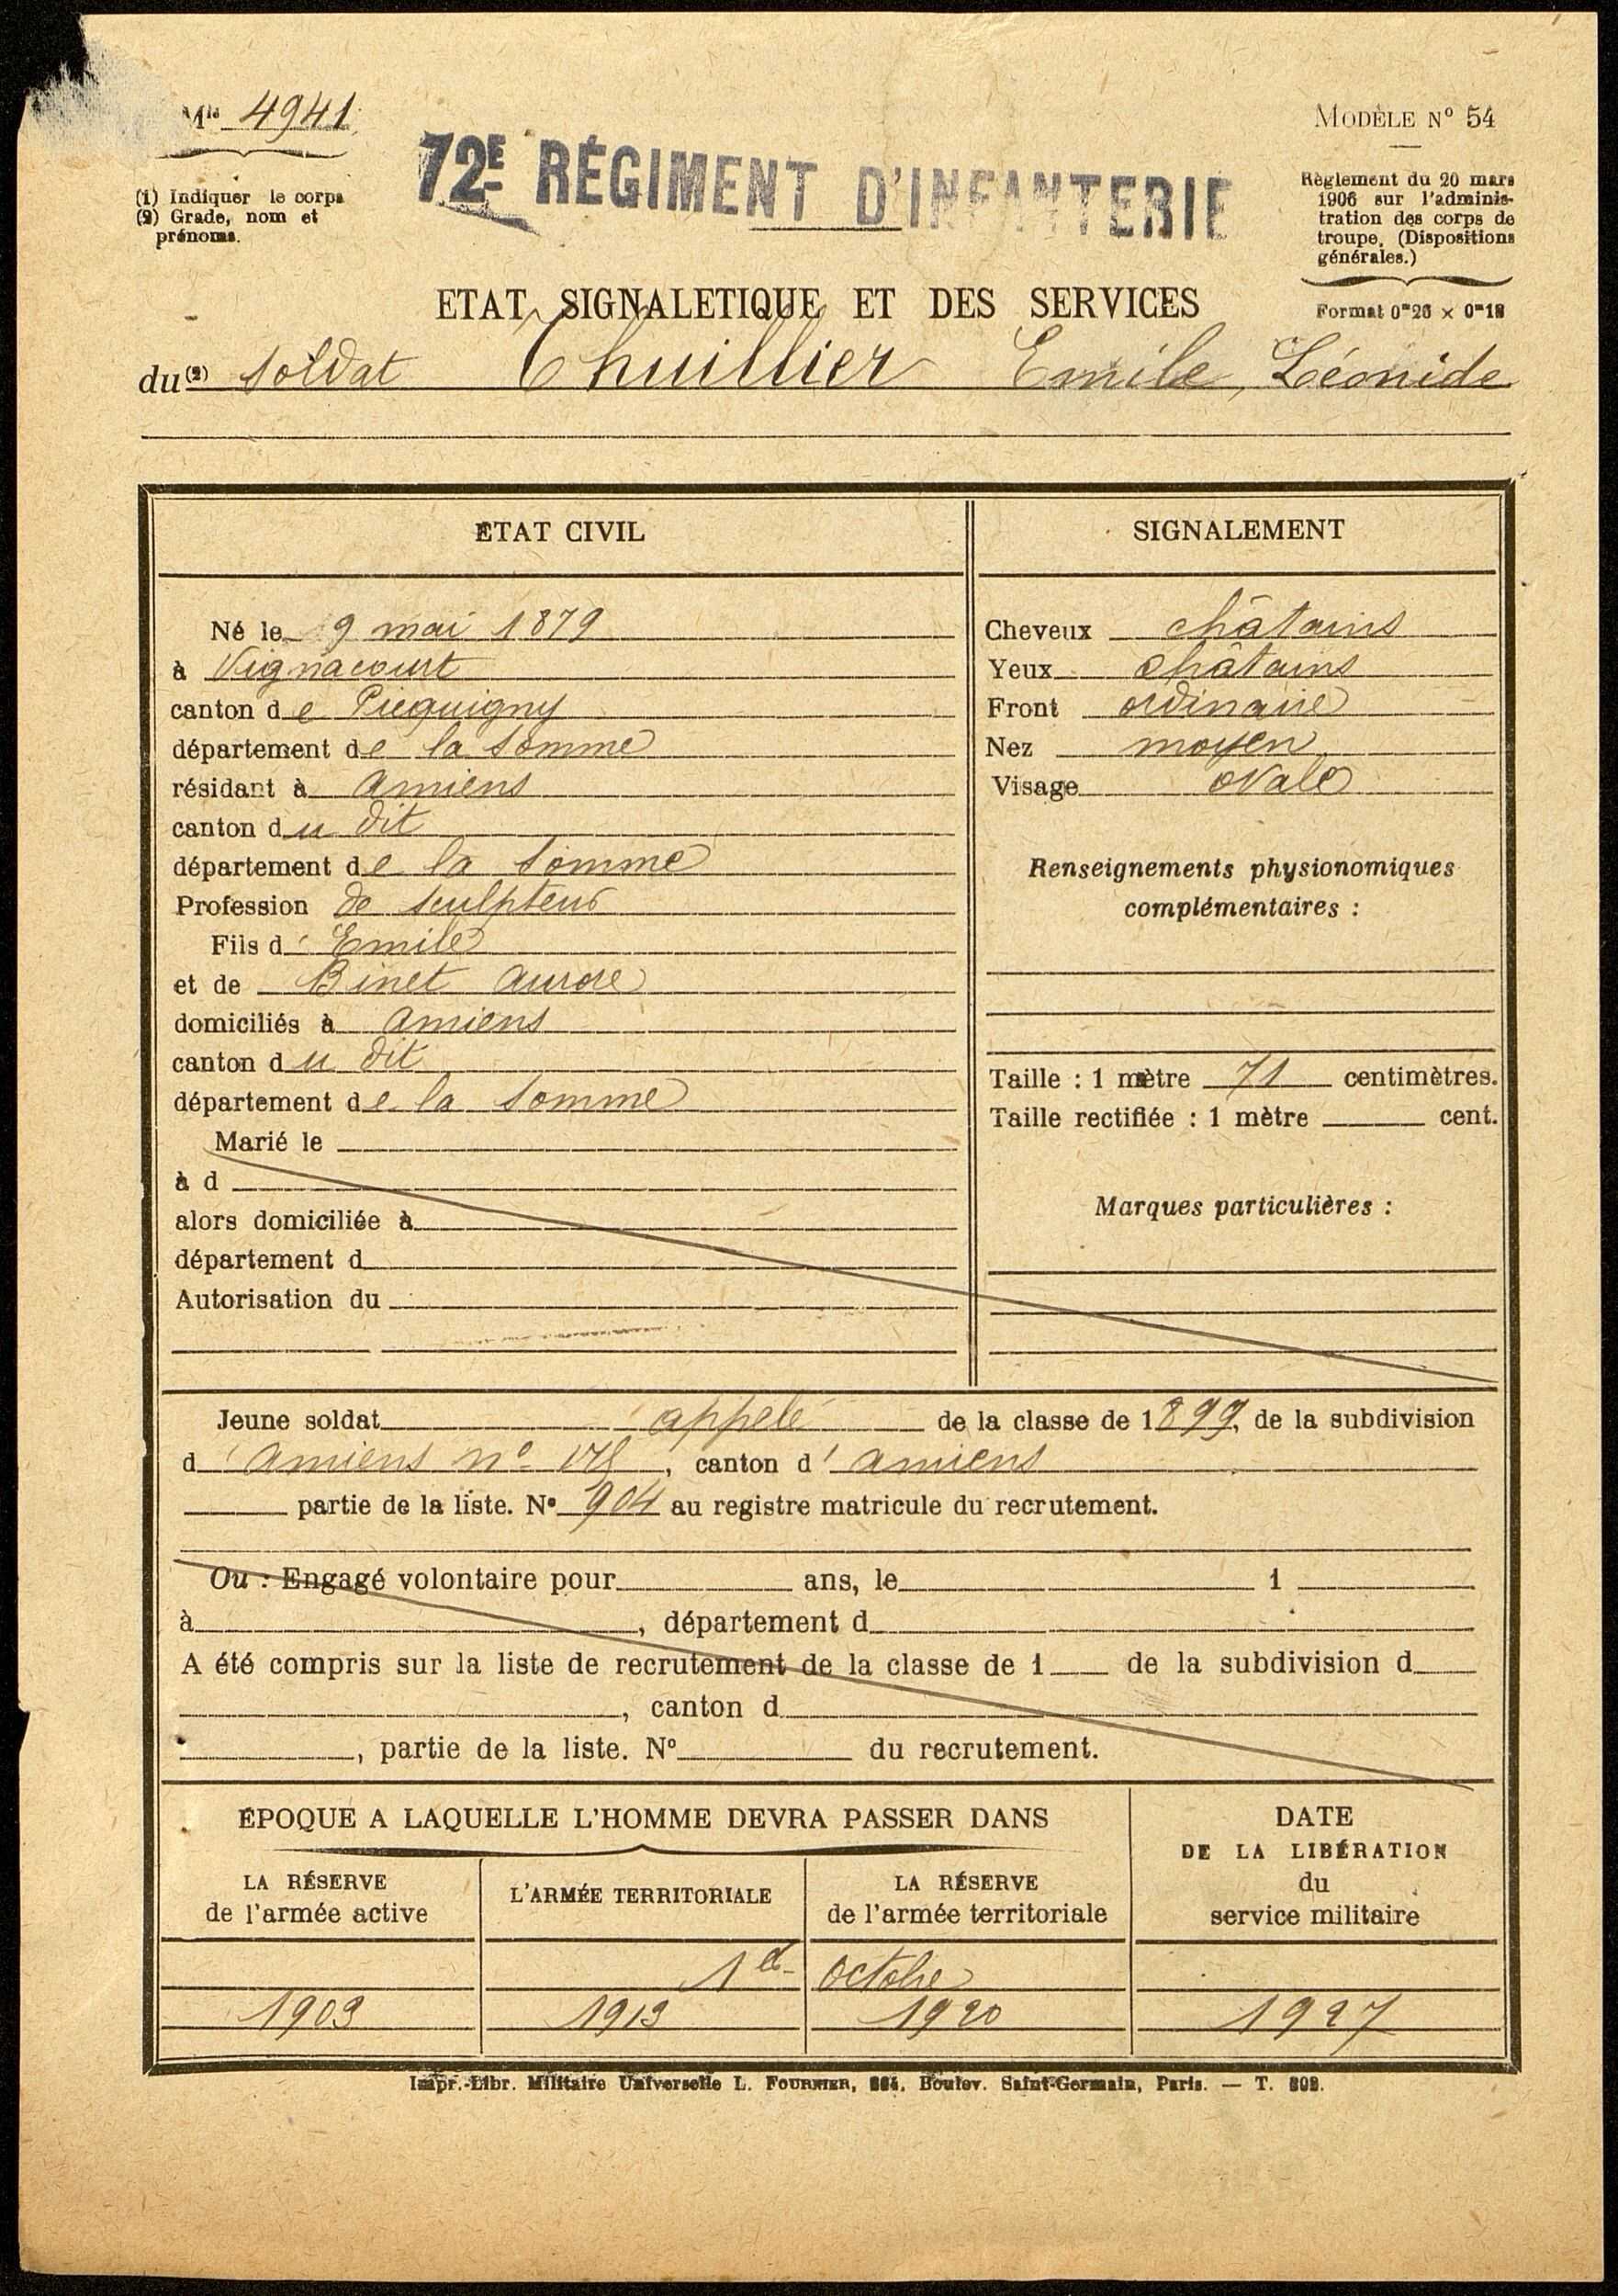 Thuillier, Emile Léonide, né le 09 mai 1879 à Vignacourt (Somme), classe 1899, matricule n° 904, Bureau de recrutement d'Amiens